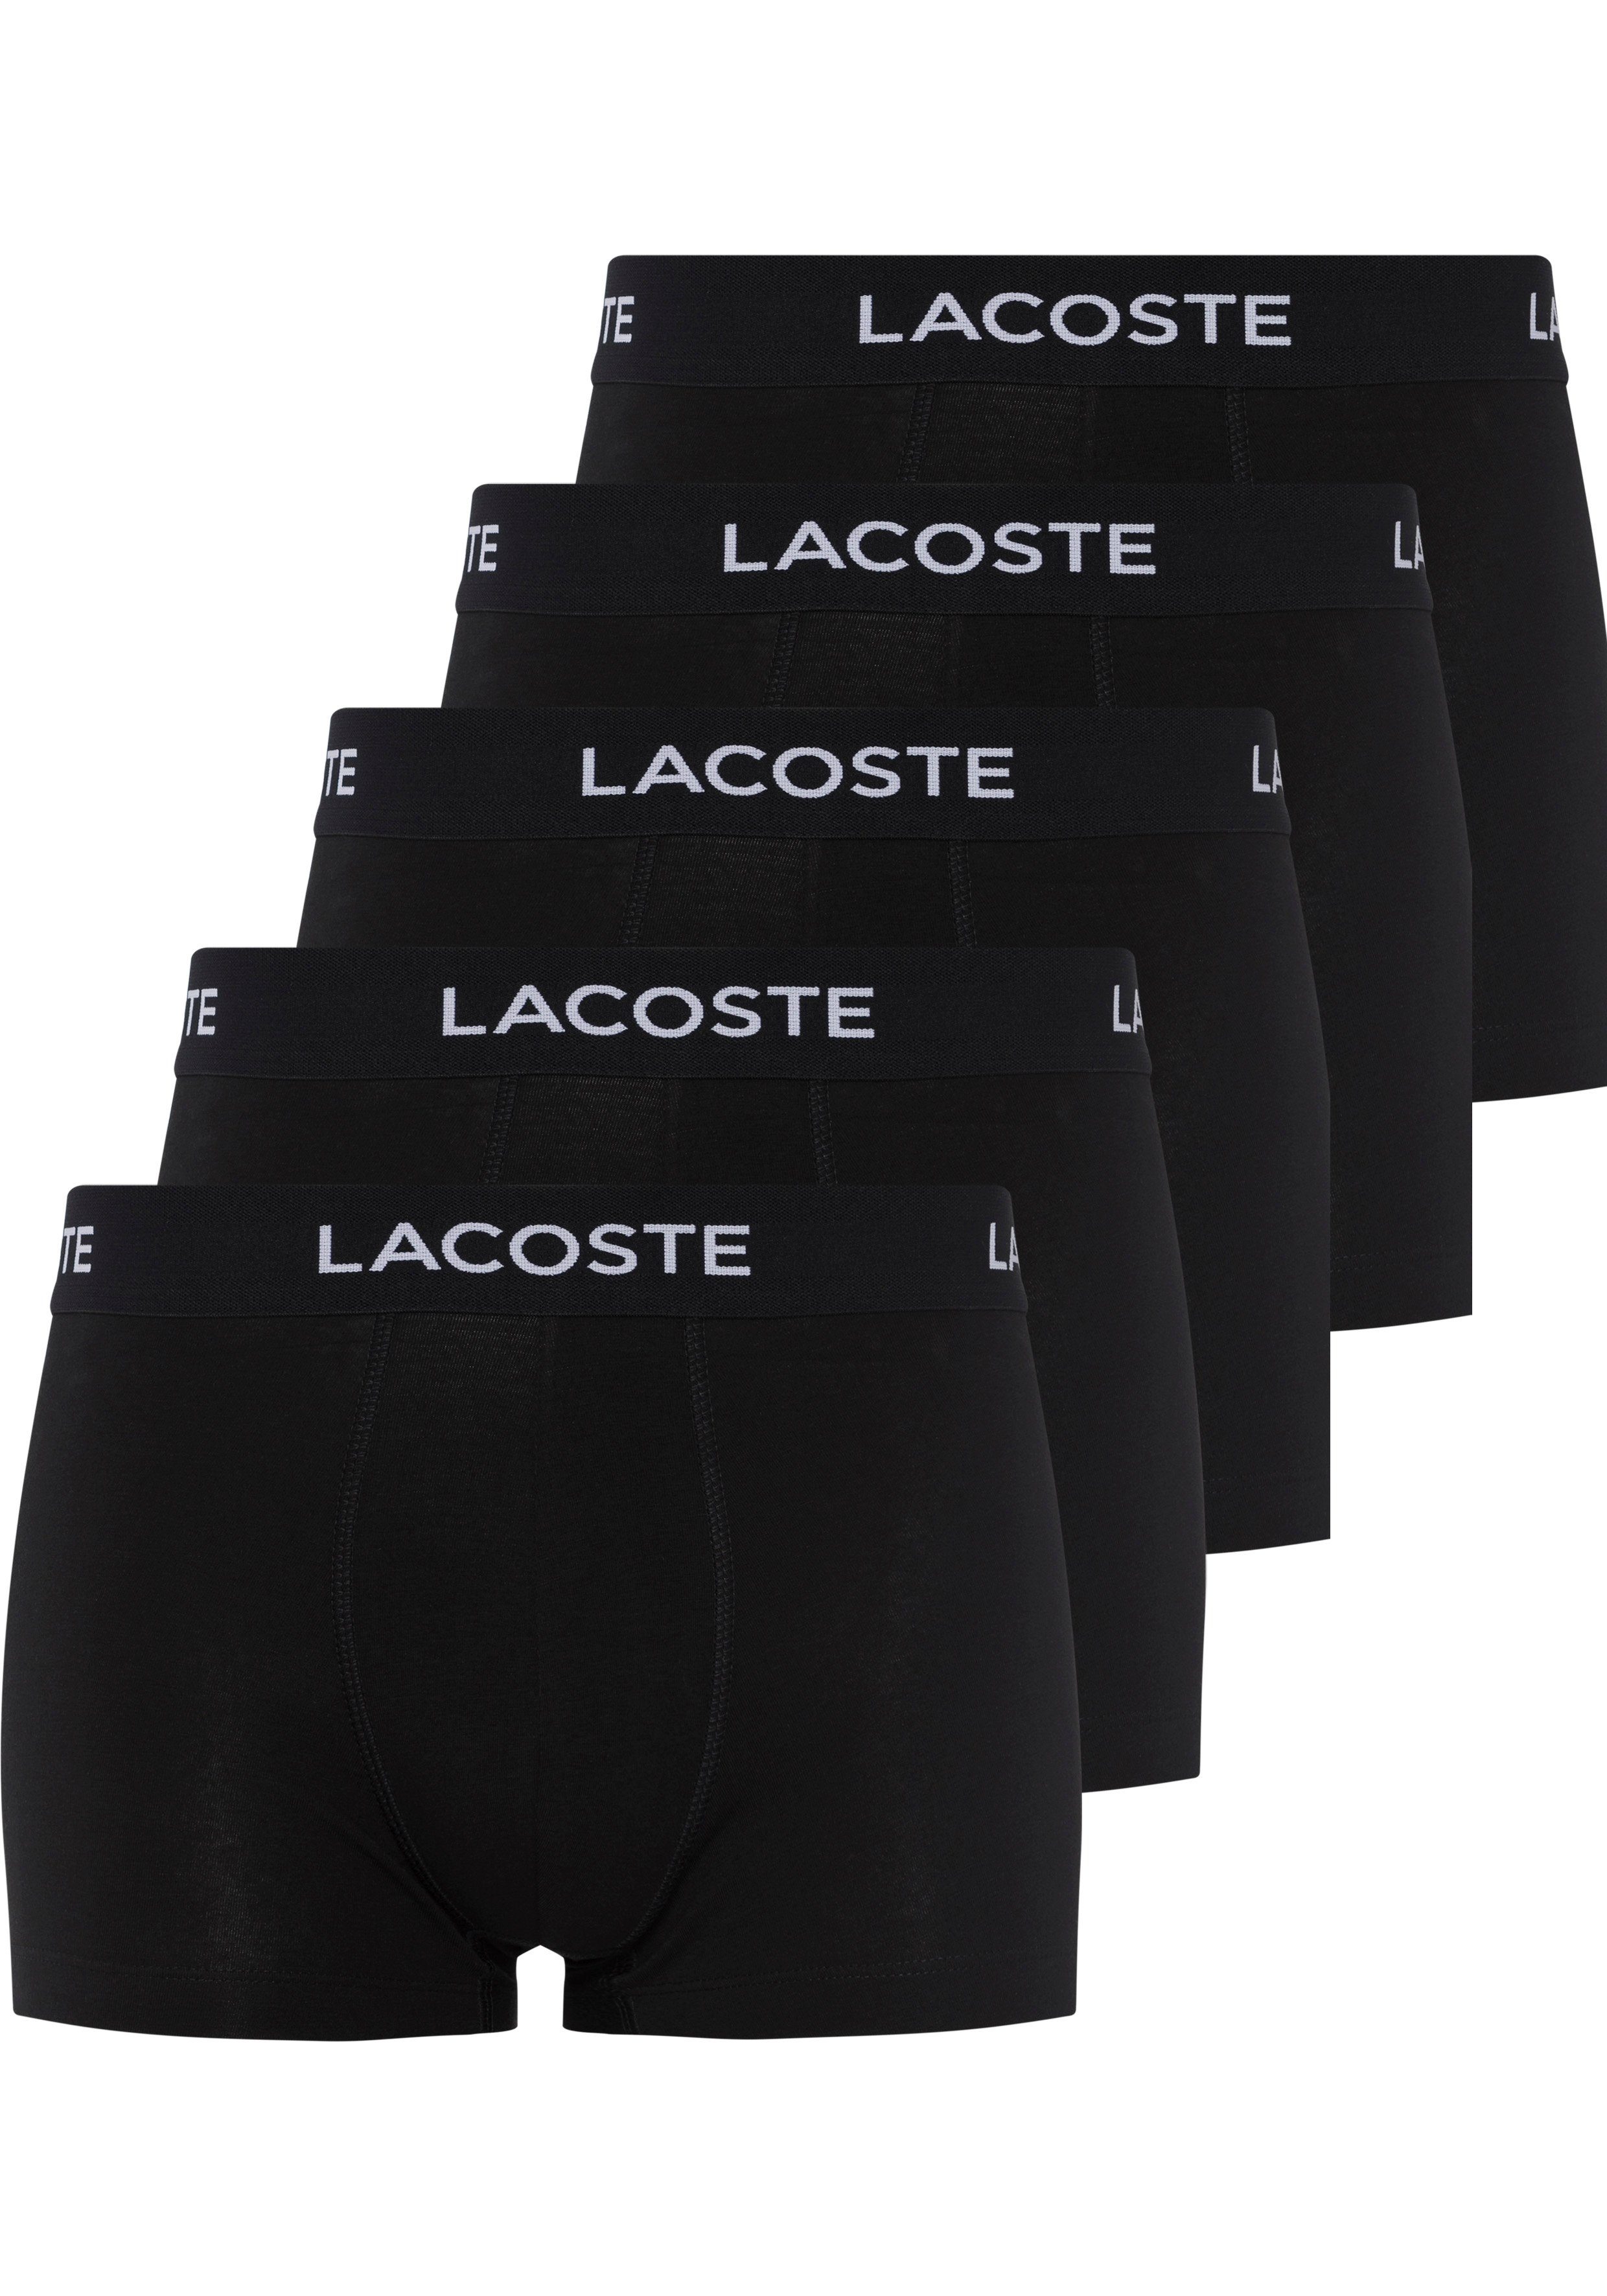 Bund Lacoste-Schriftzug Lacoste schwarz-weiß mit 5er-Pack) am Boxershorts (Packung, 5-St.,